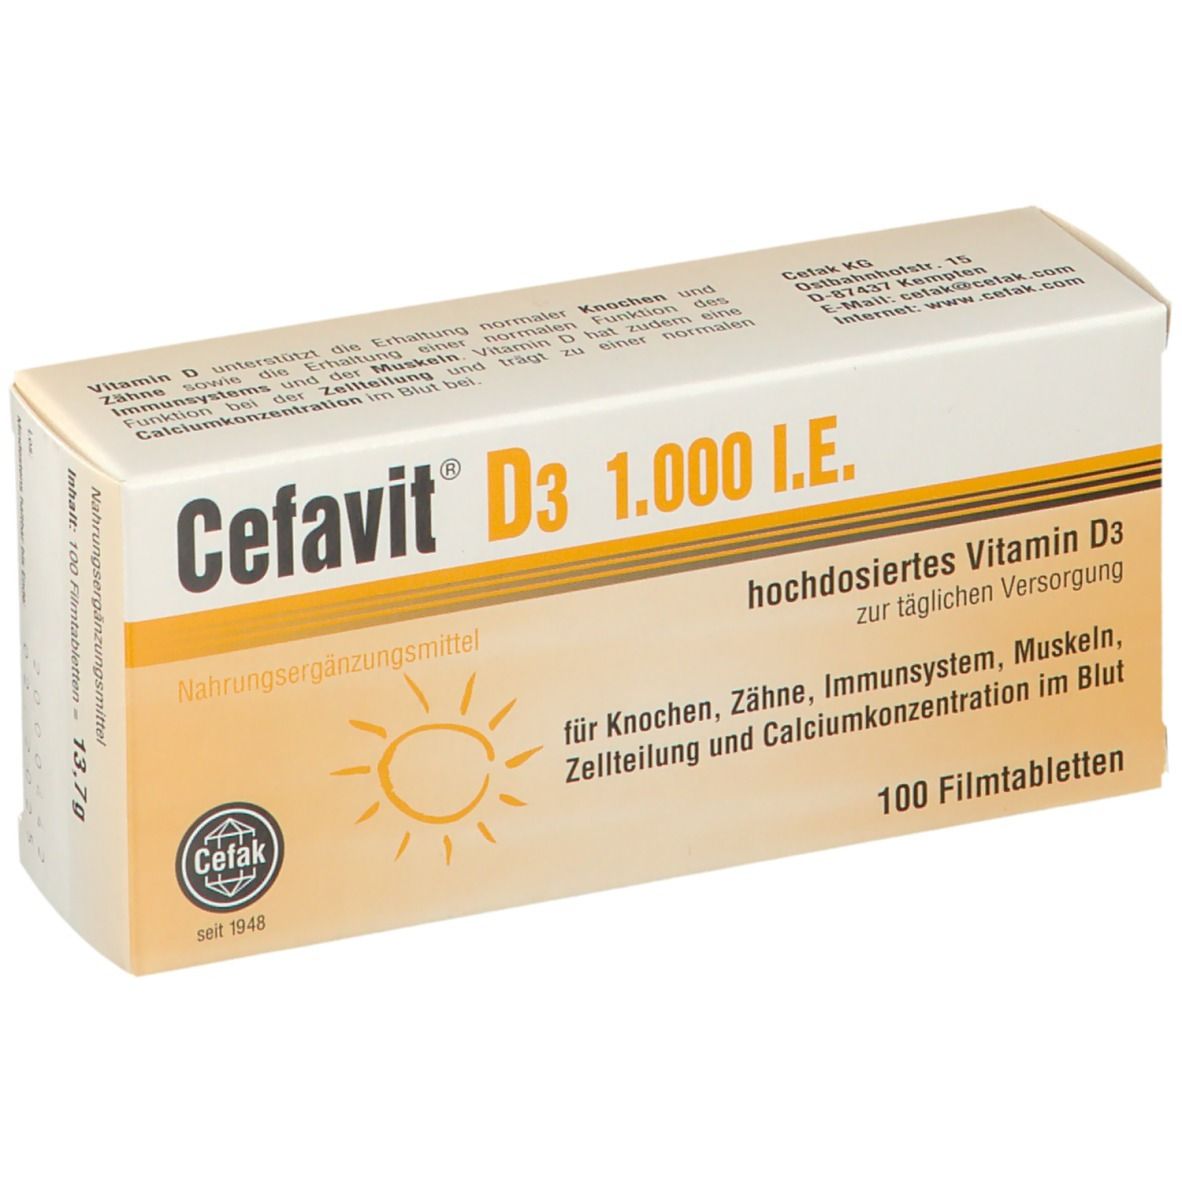 Cefavit® D3 1.000 I.E.